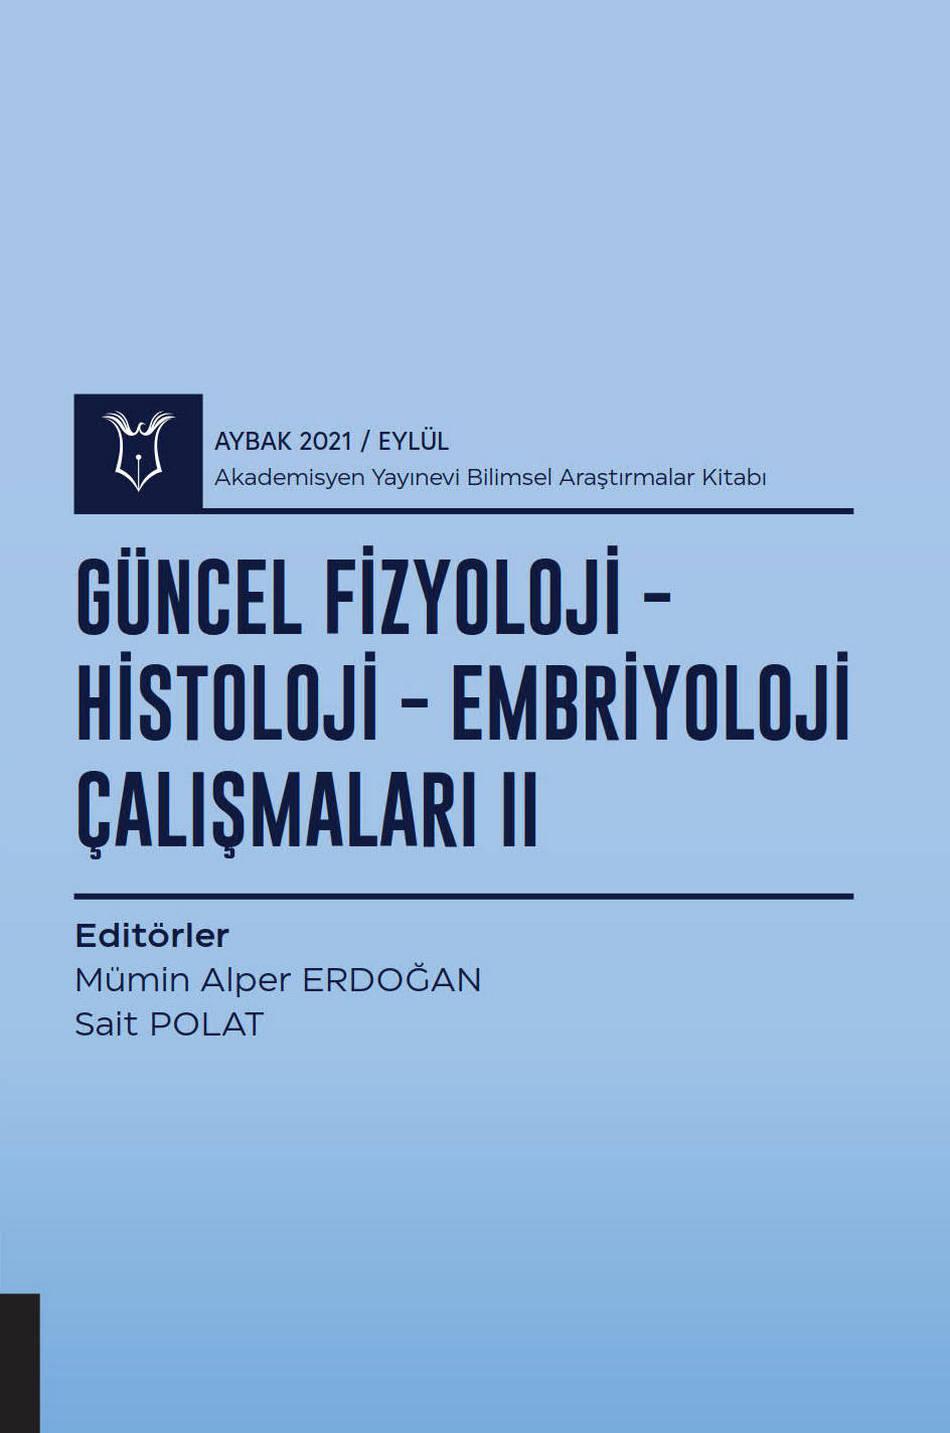 Güncel Fizyoloji-Histoloji-Embriyoloji Çalışmaları II ( AYBAK 2021 Eylül )